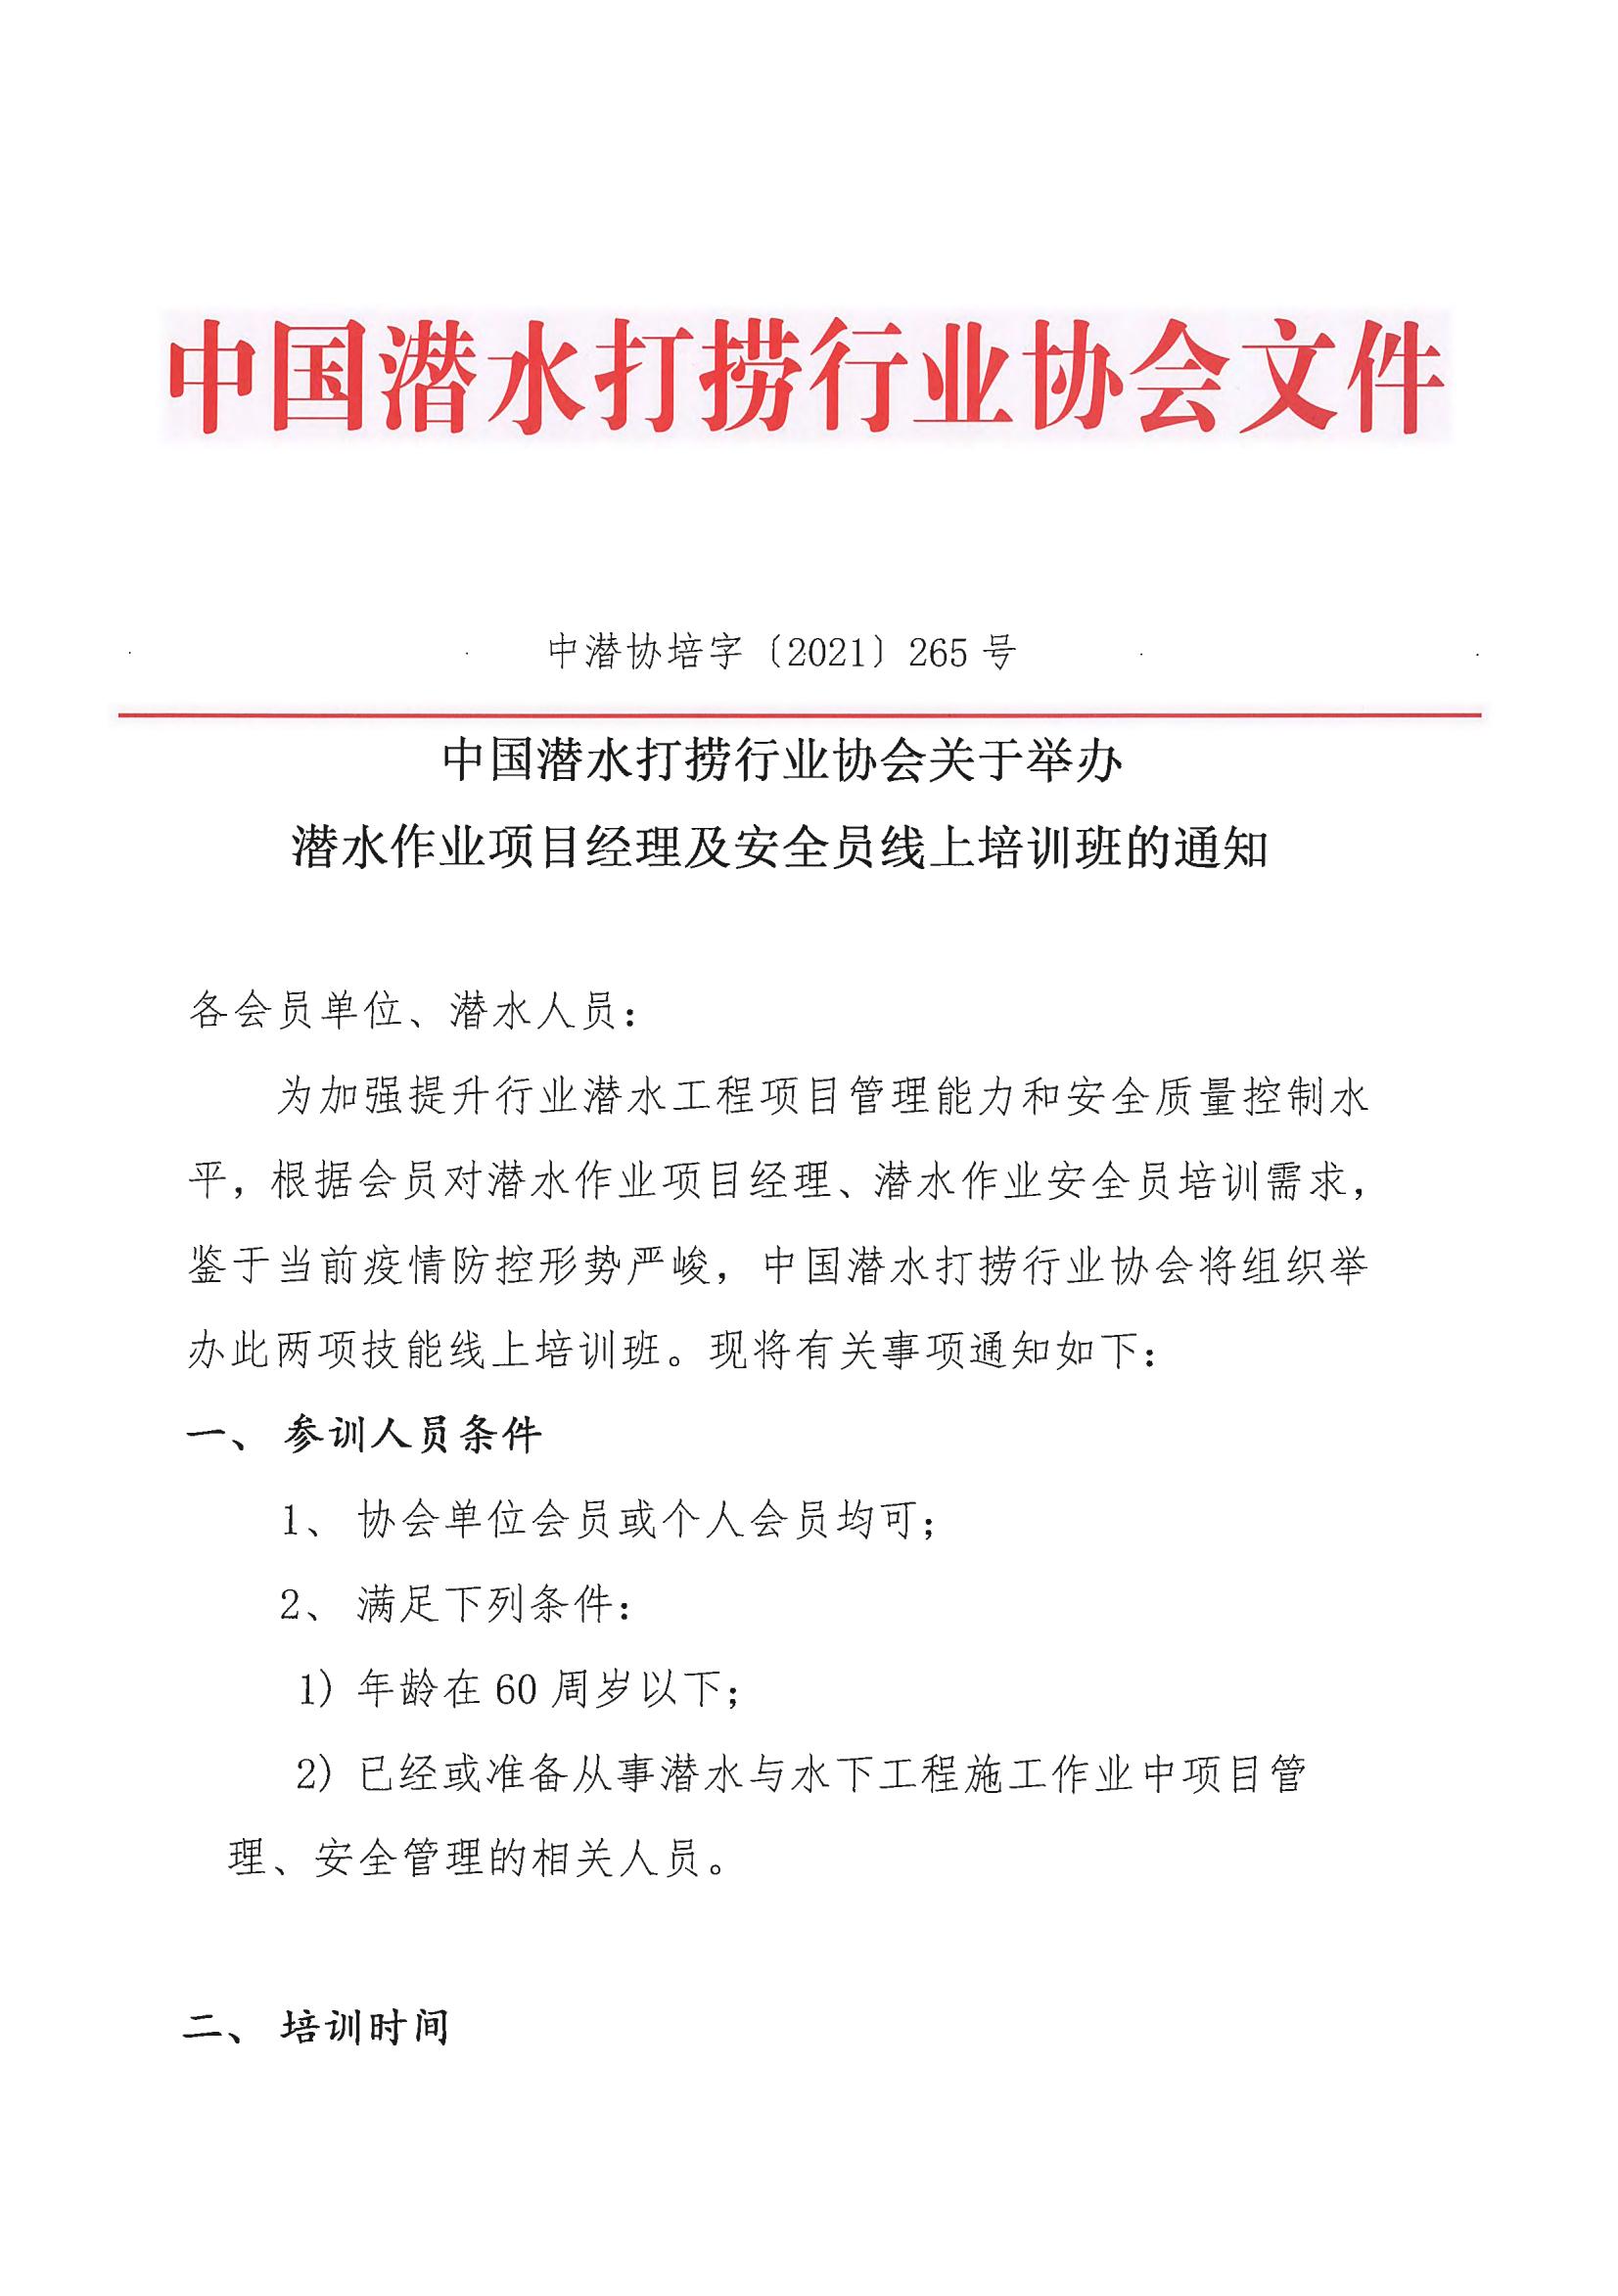 中国潜水打捞行业协会关于举办潜水作业项目经理及安全员线上培训班的通知_00.jpg